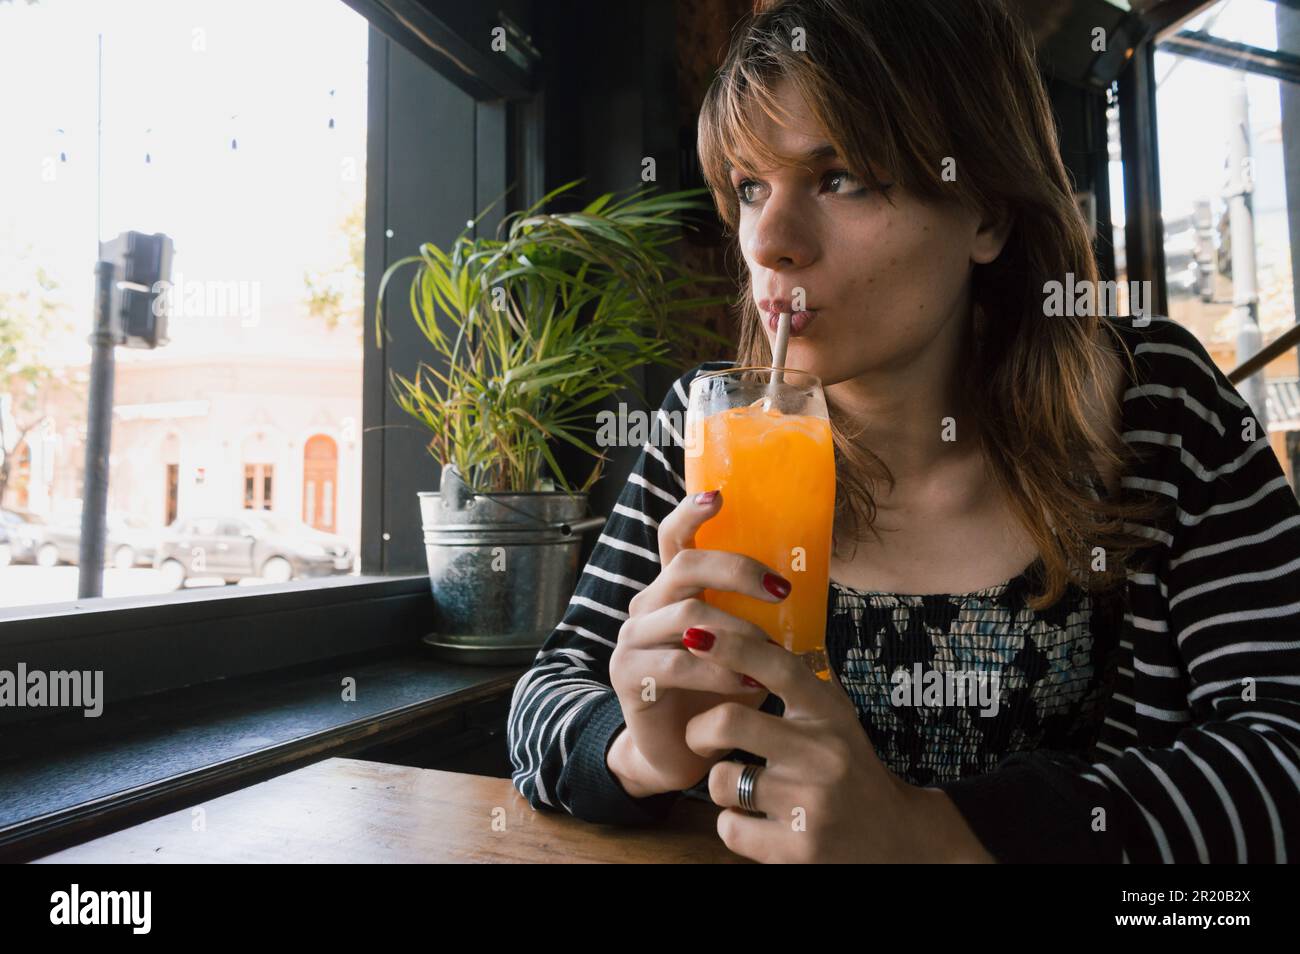 ritratto di giovane latina ispanica di etnia argentina, seduta bevendo succo d'arancia in un ristorante, in attesa del suo partner. Foto Stock